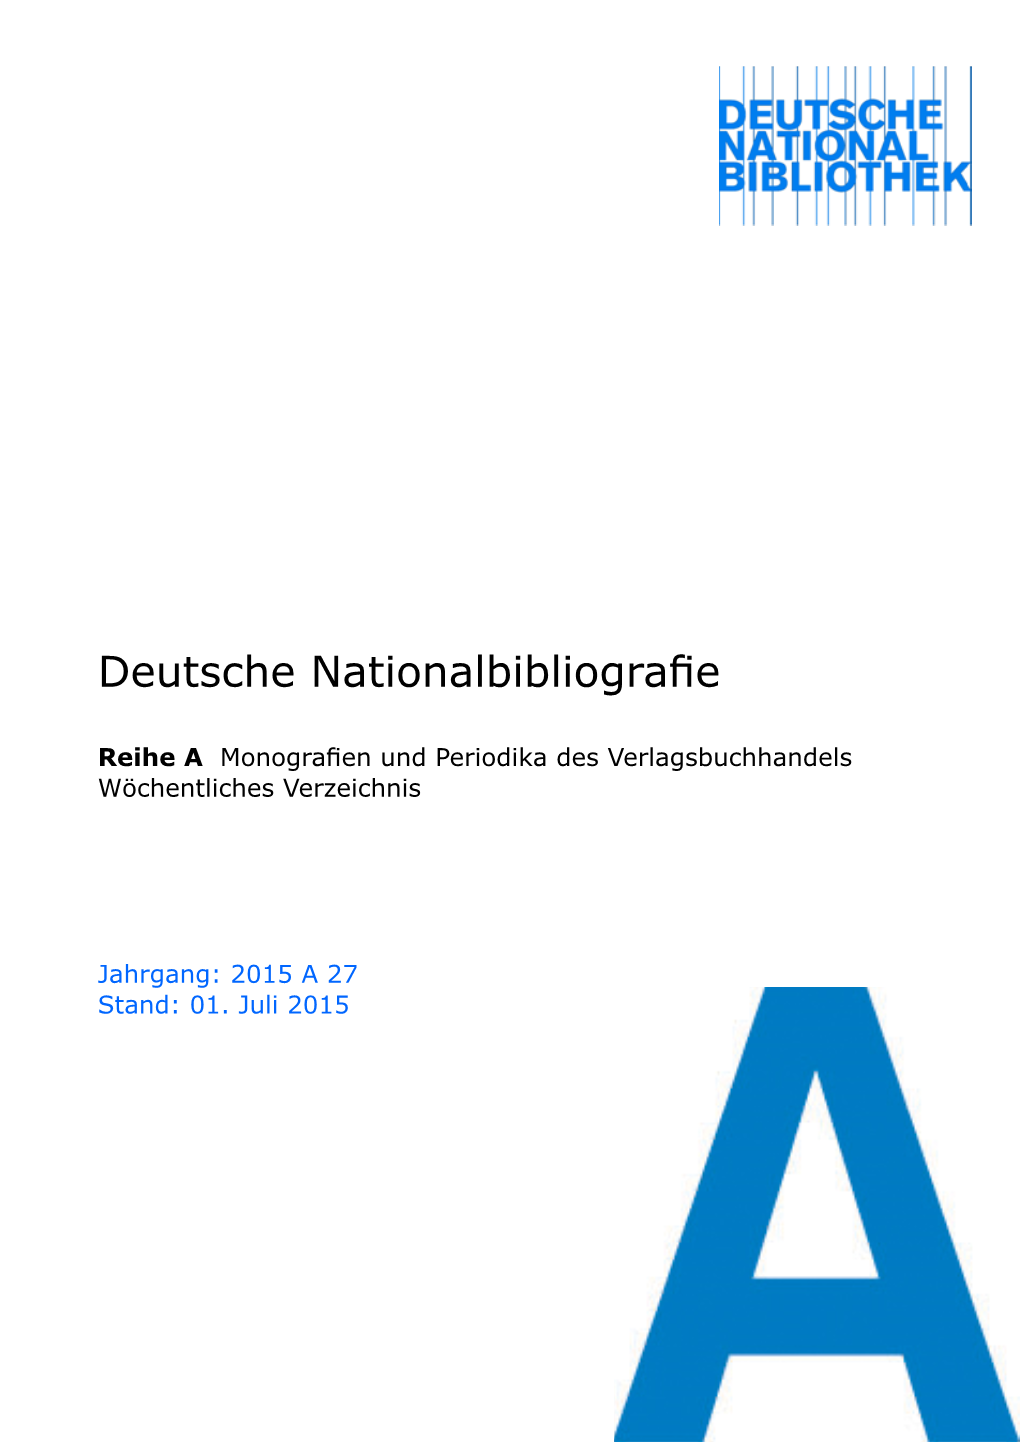 Deutsche Nationalbibliografie 2015 a 27